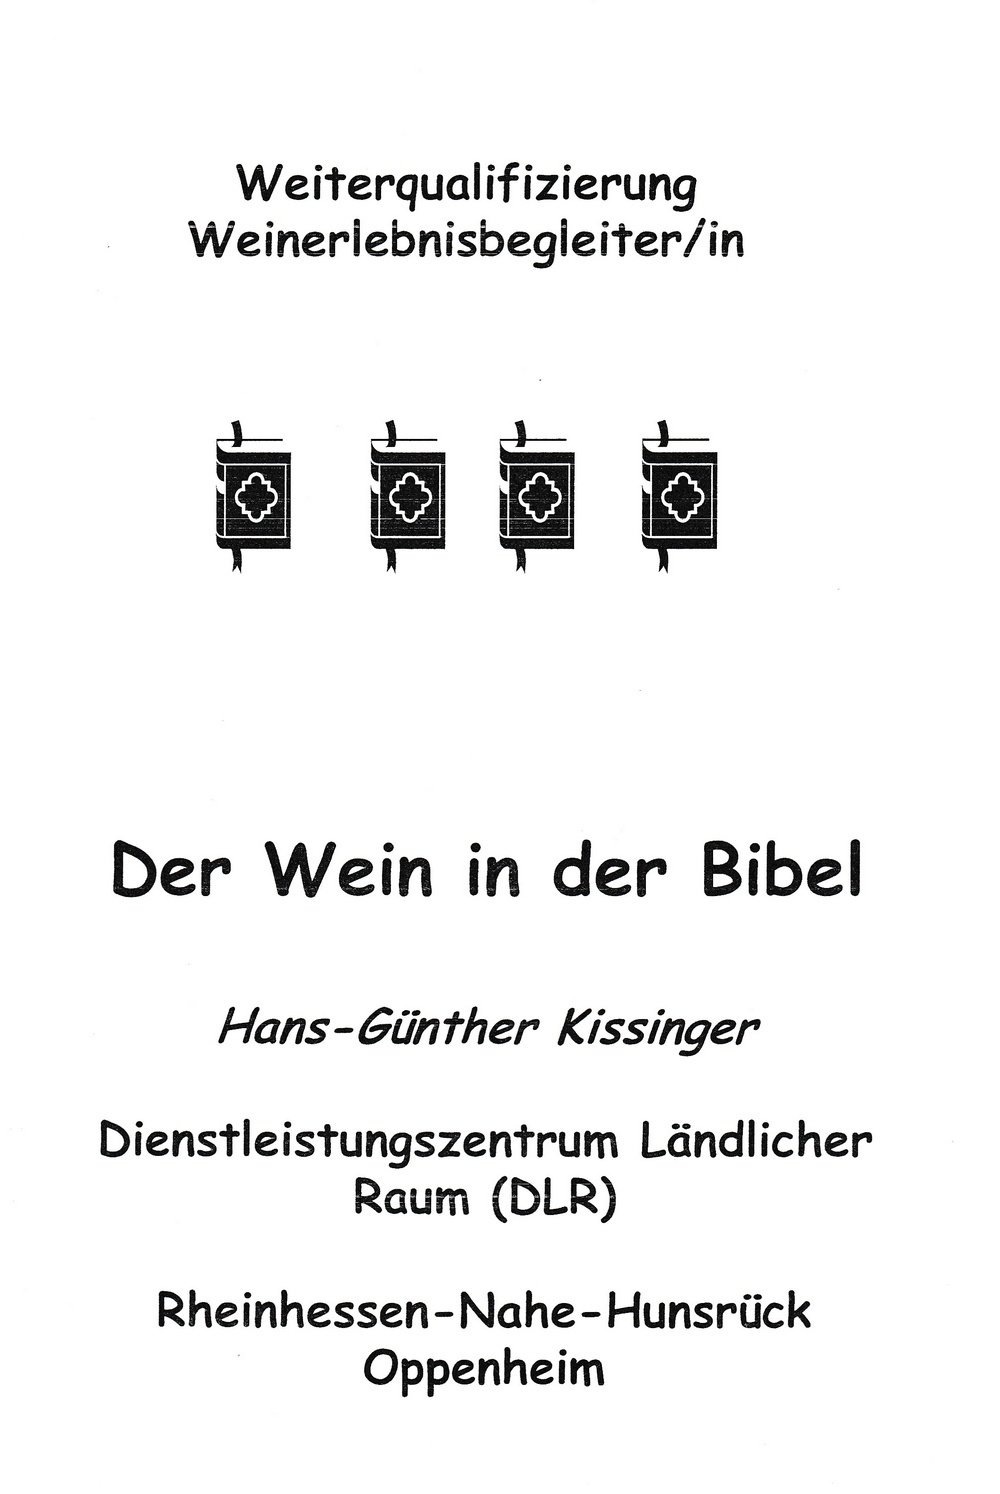 Der Wein in der Bibel (Kulturverein Guntersblum CC BY-NC-SA)